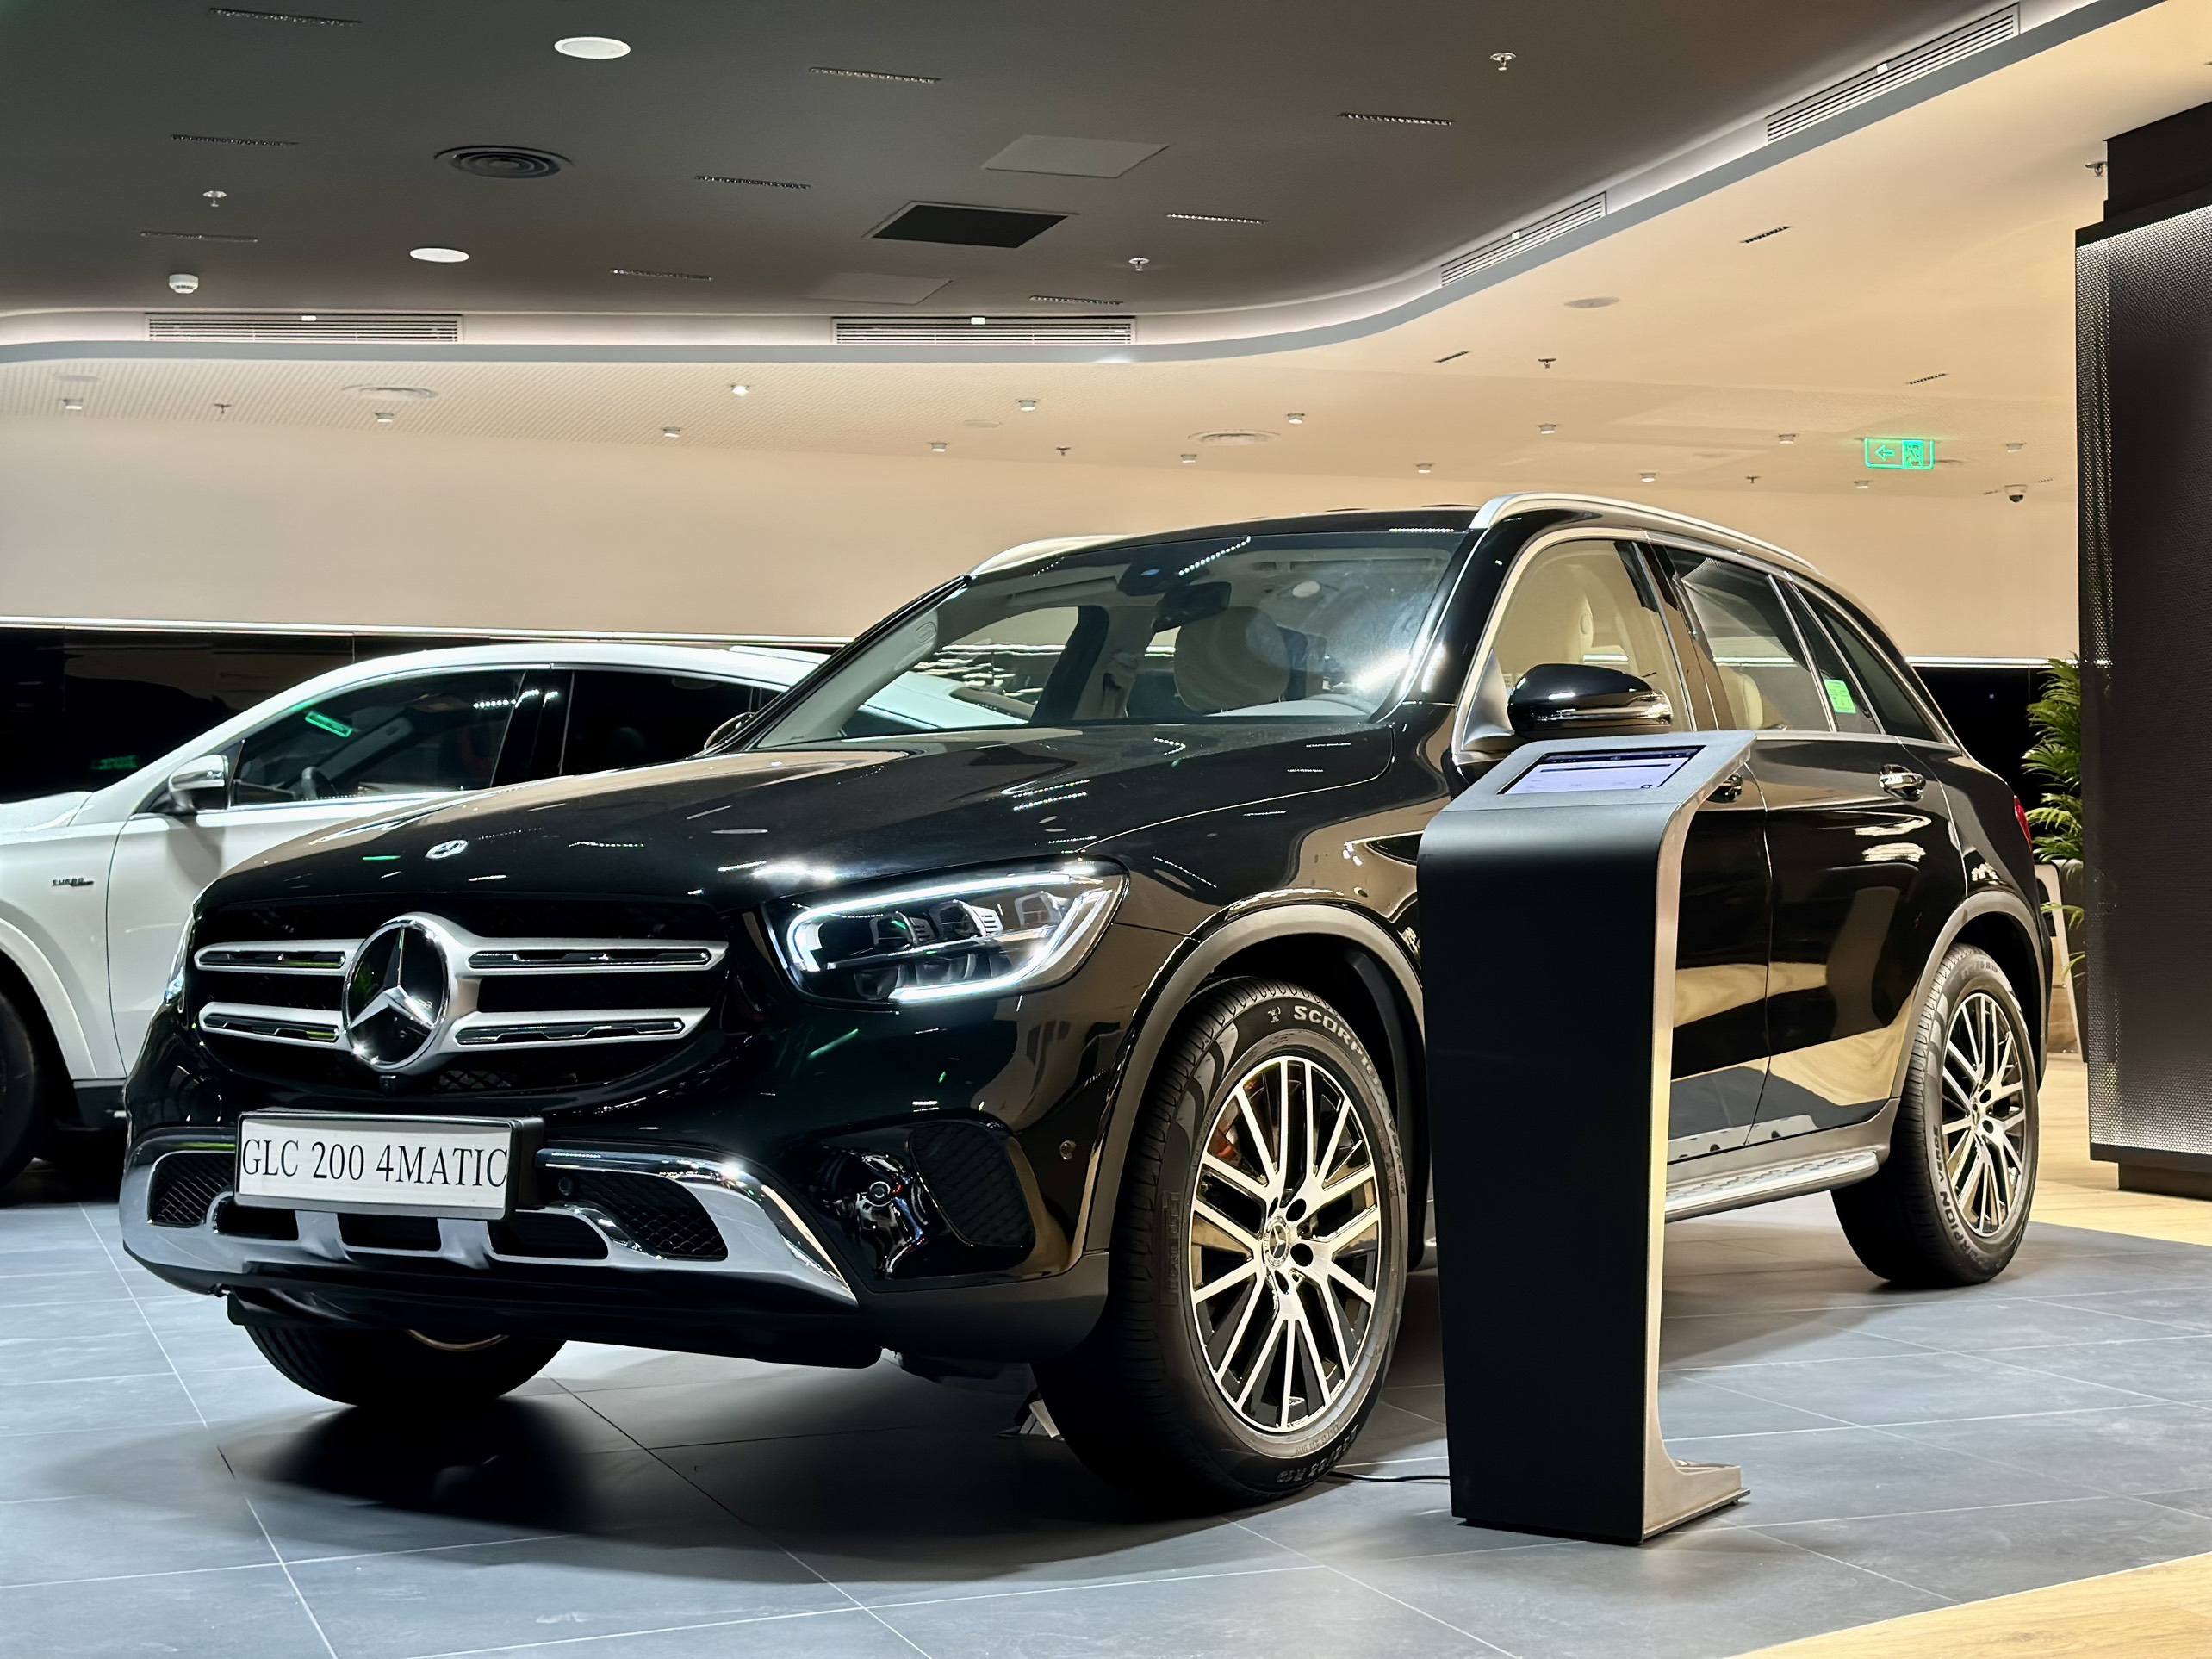 Đèn sau của Mercedes GLC 200 2021 và Mercedes GLC 200 2019 có gì khác    Mercedes VietNam  Các dòng xe chính hãng MercedesBenz giá tốt